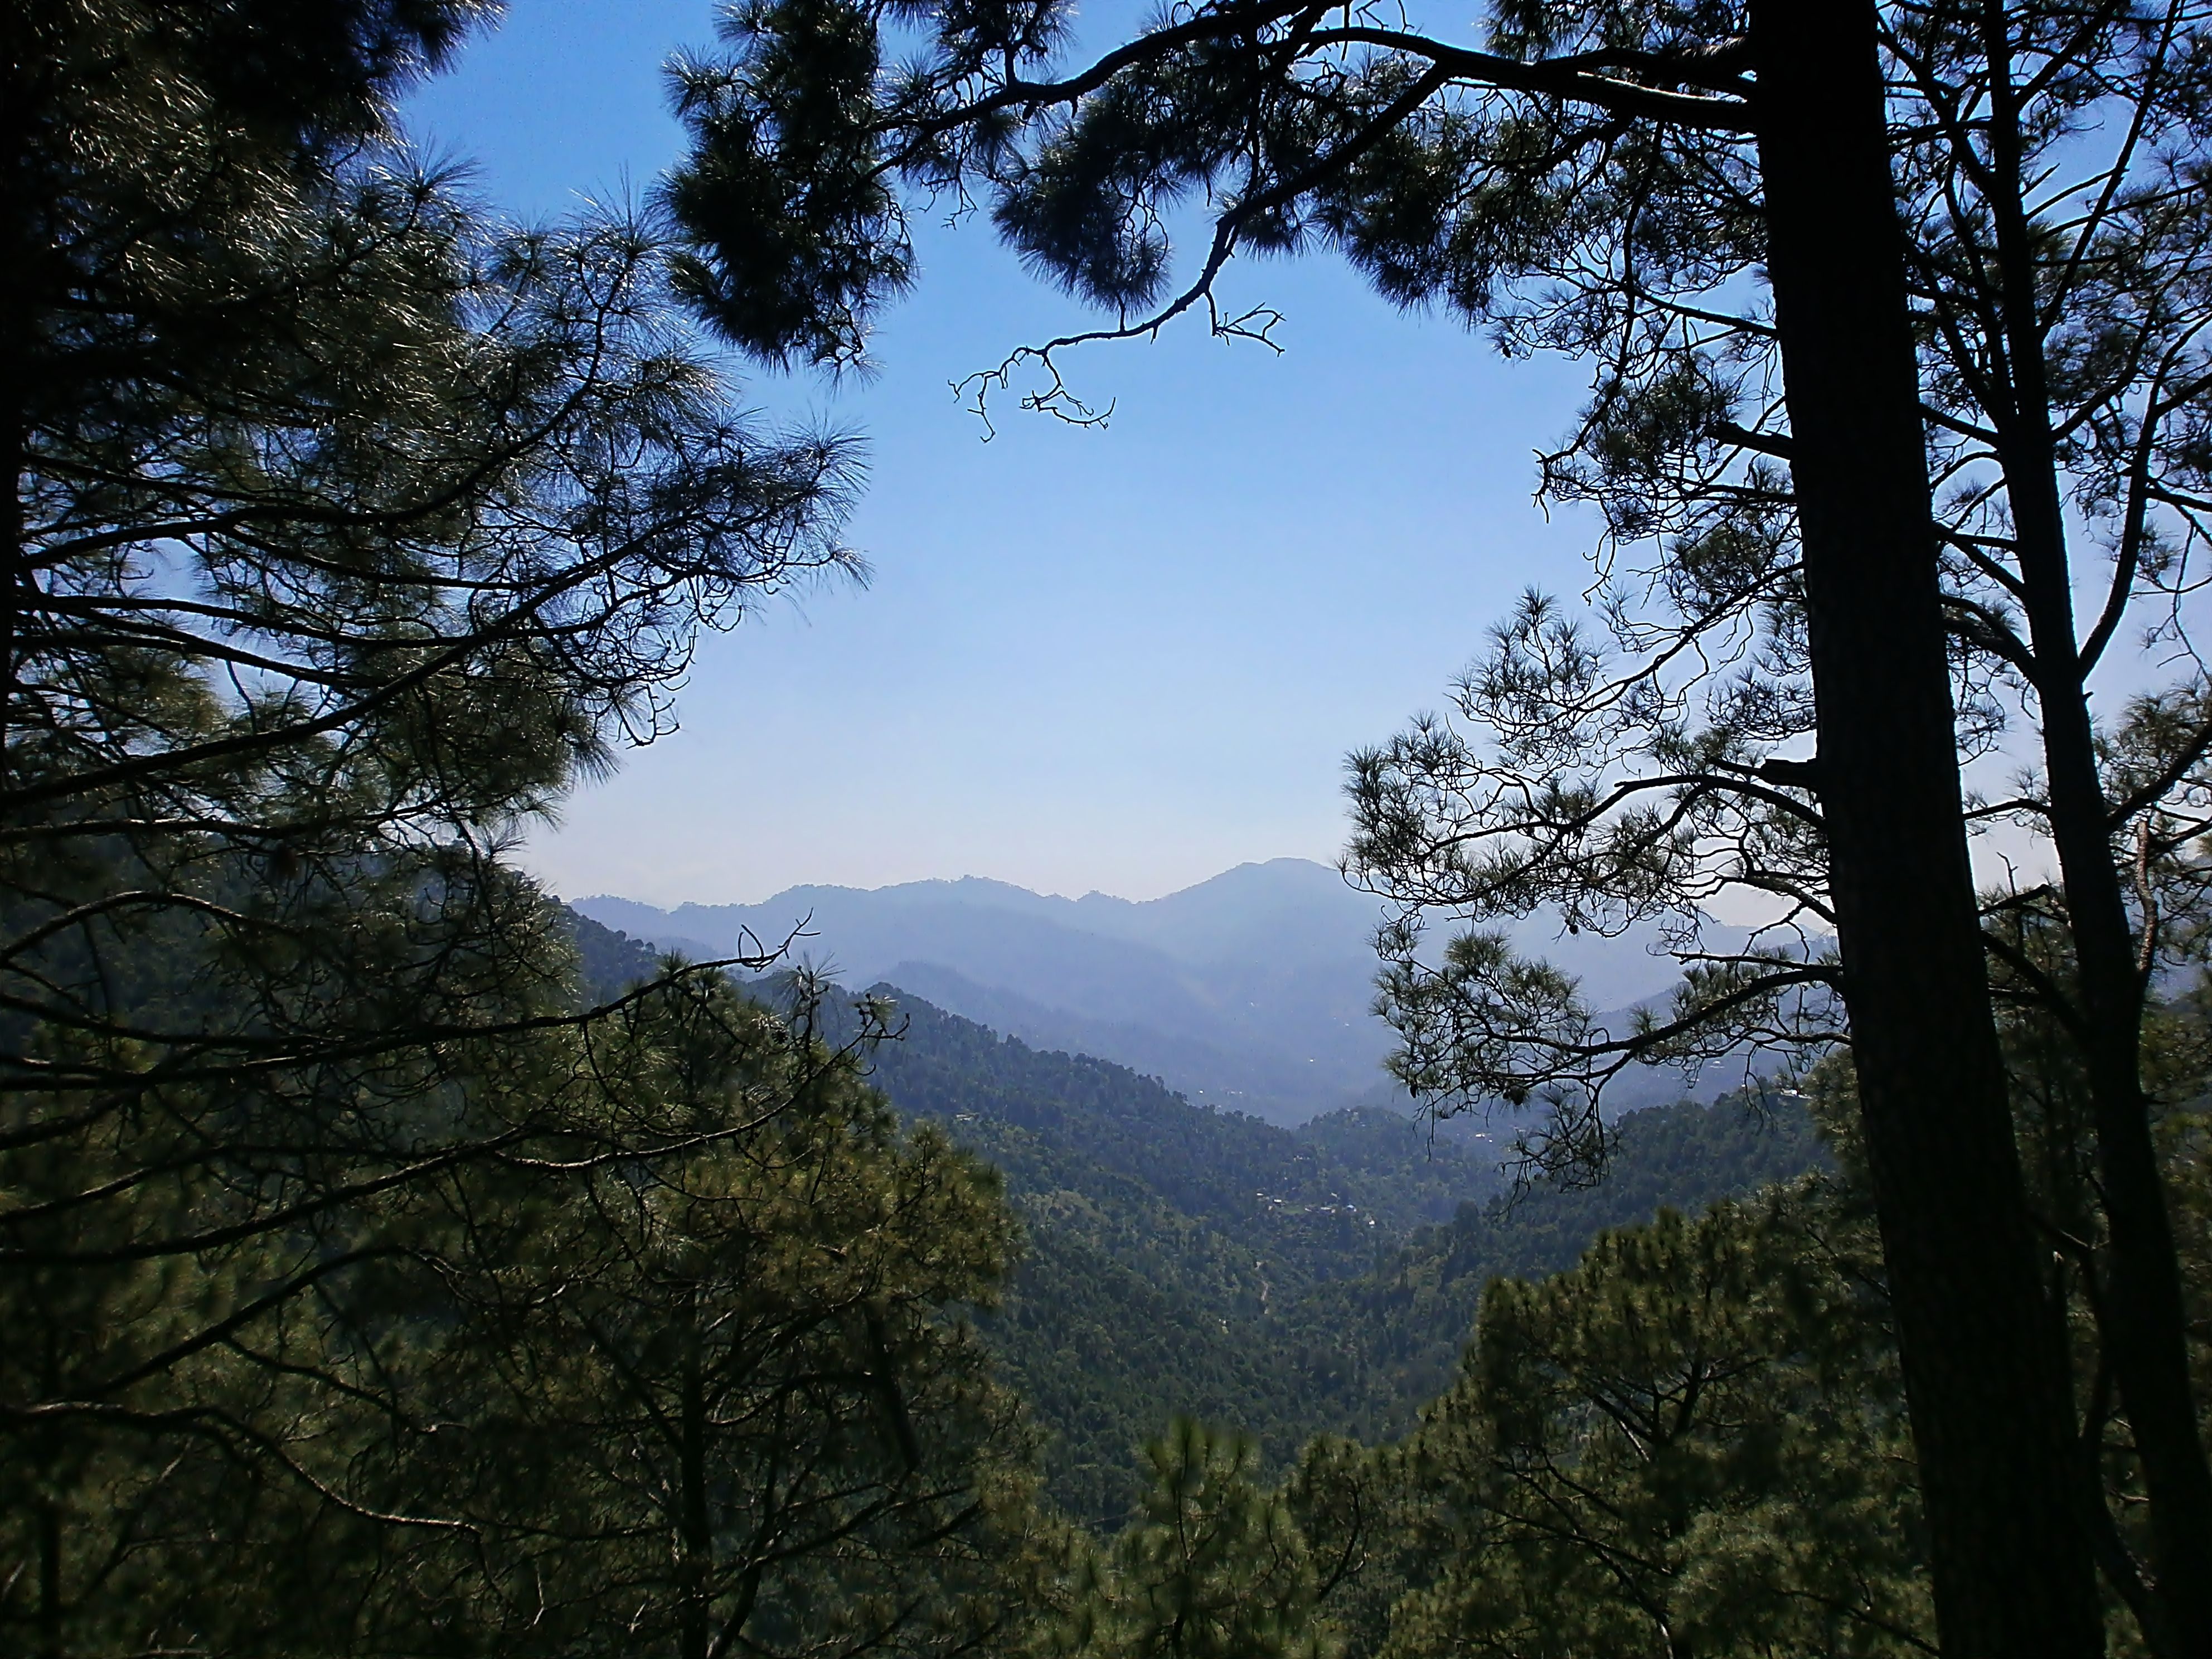 Shivalik Range in Northern India where the Van Gujjars live